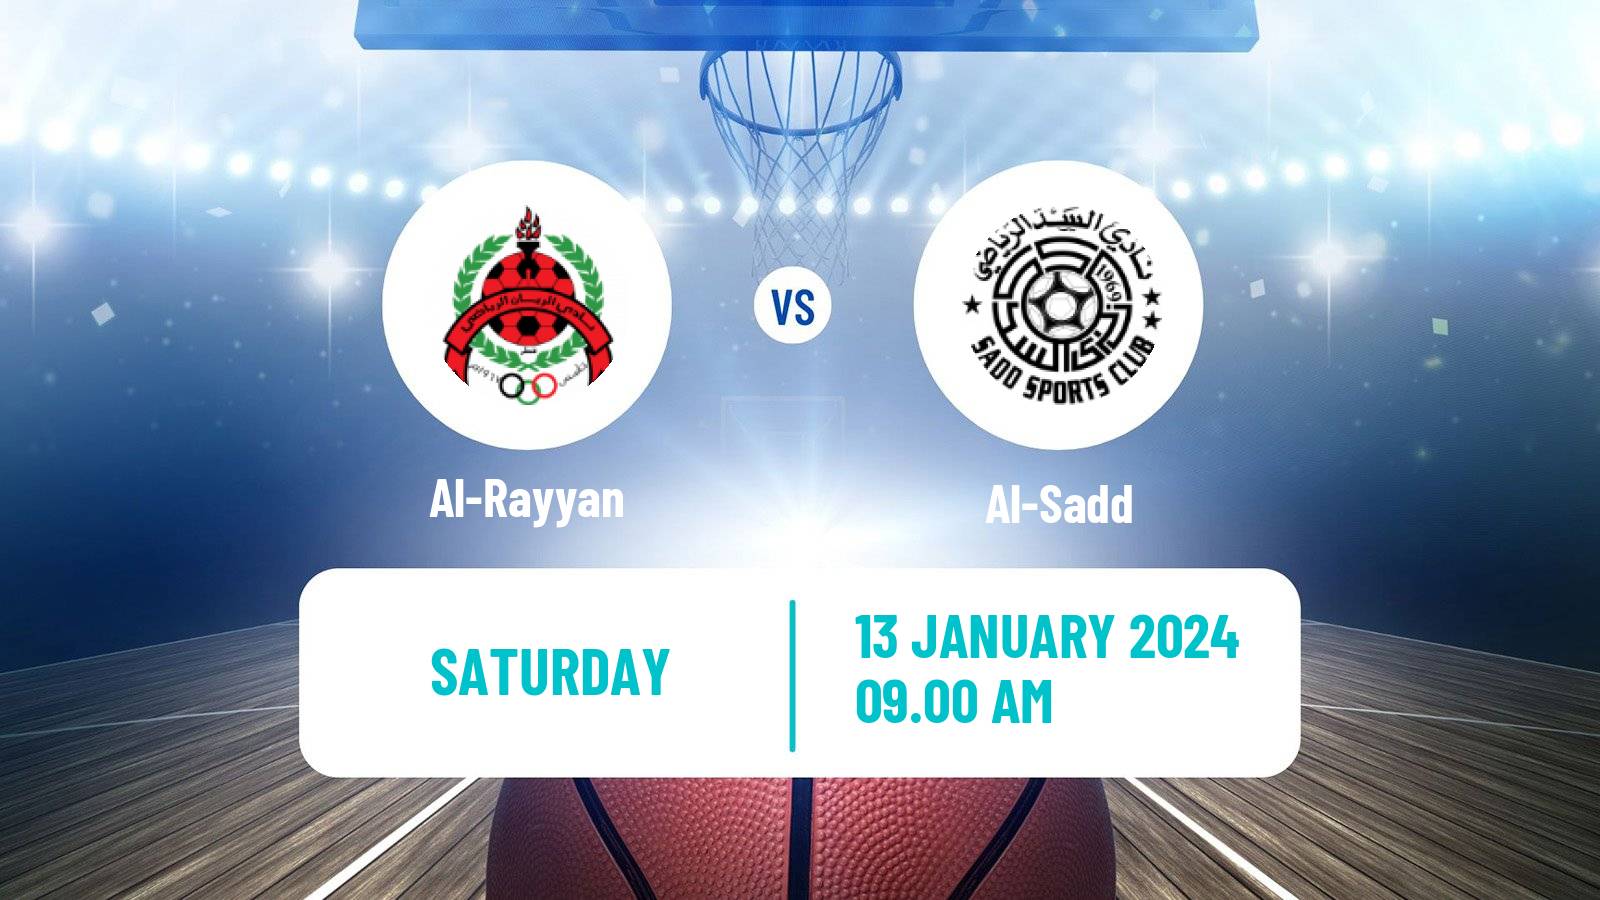 Basketball Qatar Basketball League Al-Rayyan - Al-Sadd